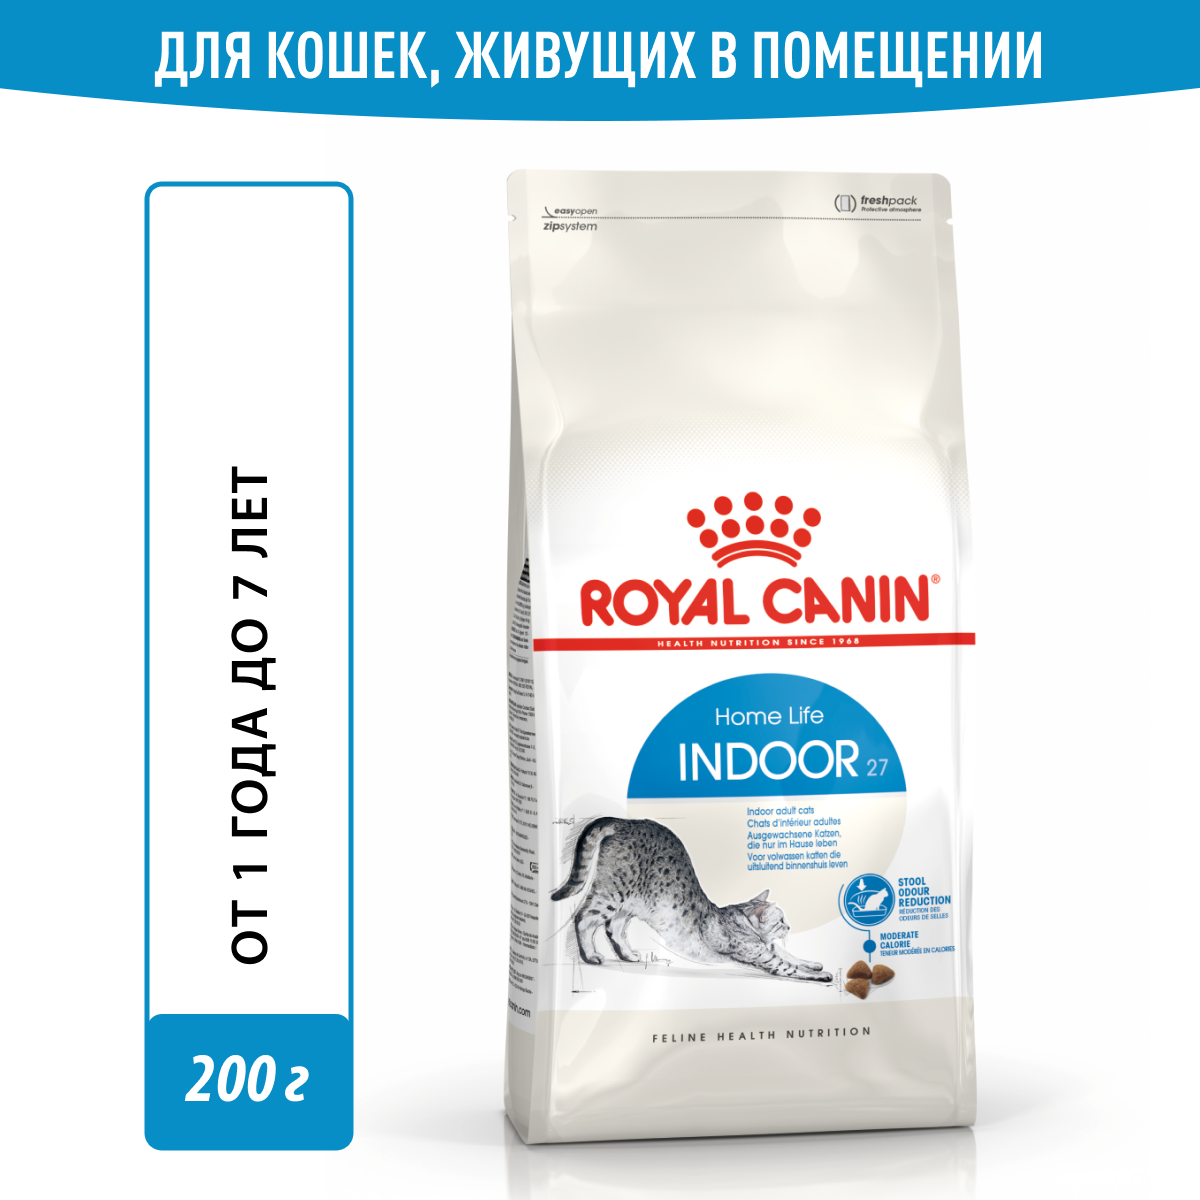     Royal Canin /   Indoor 27      200 /     